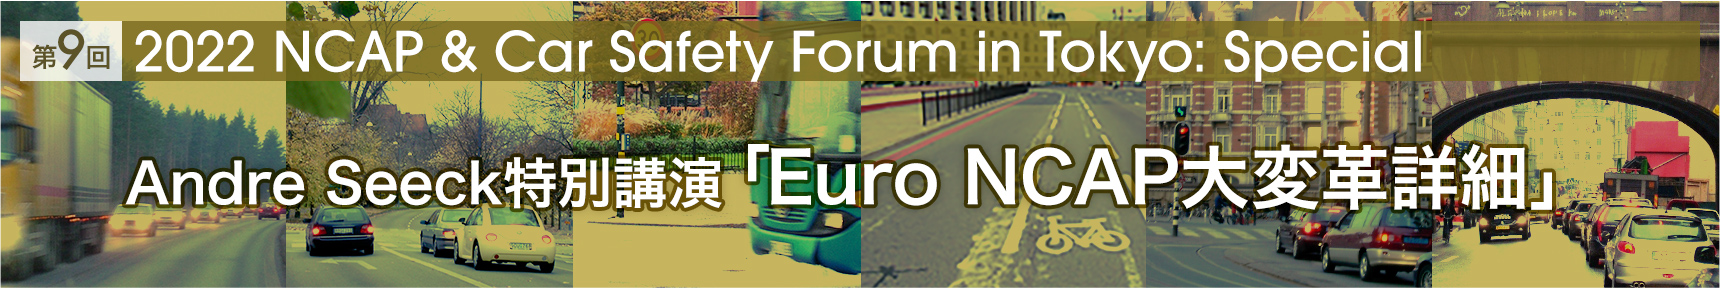 第9回「2022 NCAP & Car Safety Forum in Tokyo: Special」Andre Seeck特別講演「Euro NCAP大変革詳細」